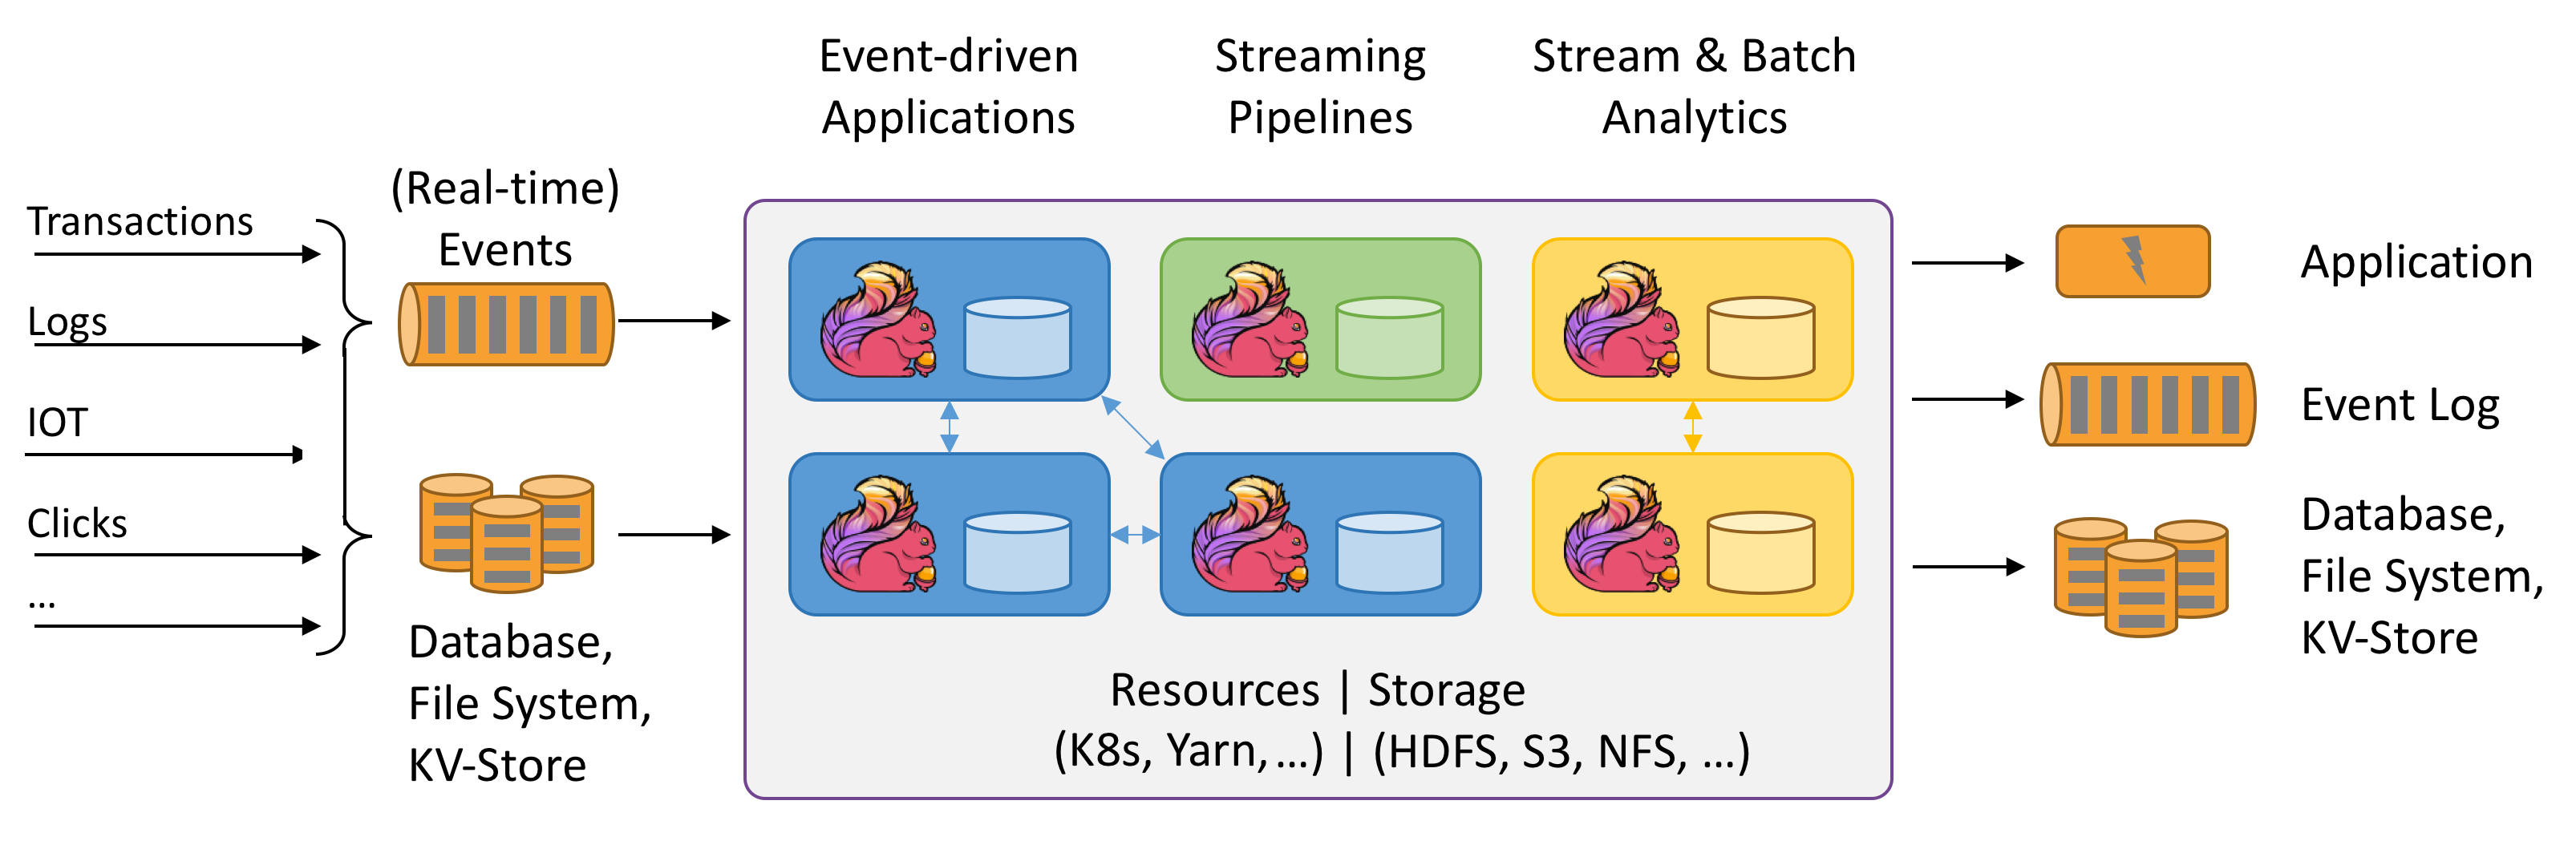 Apache Flink [1] is an open-source big data stream analytics platform